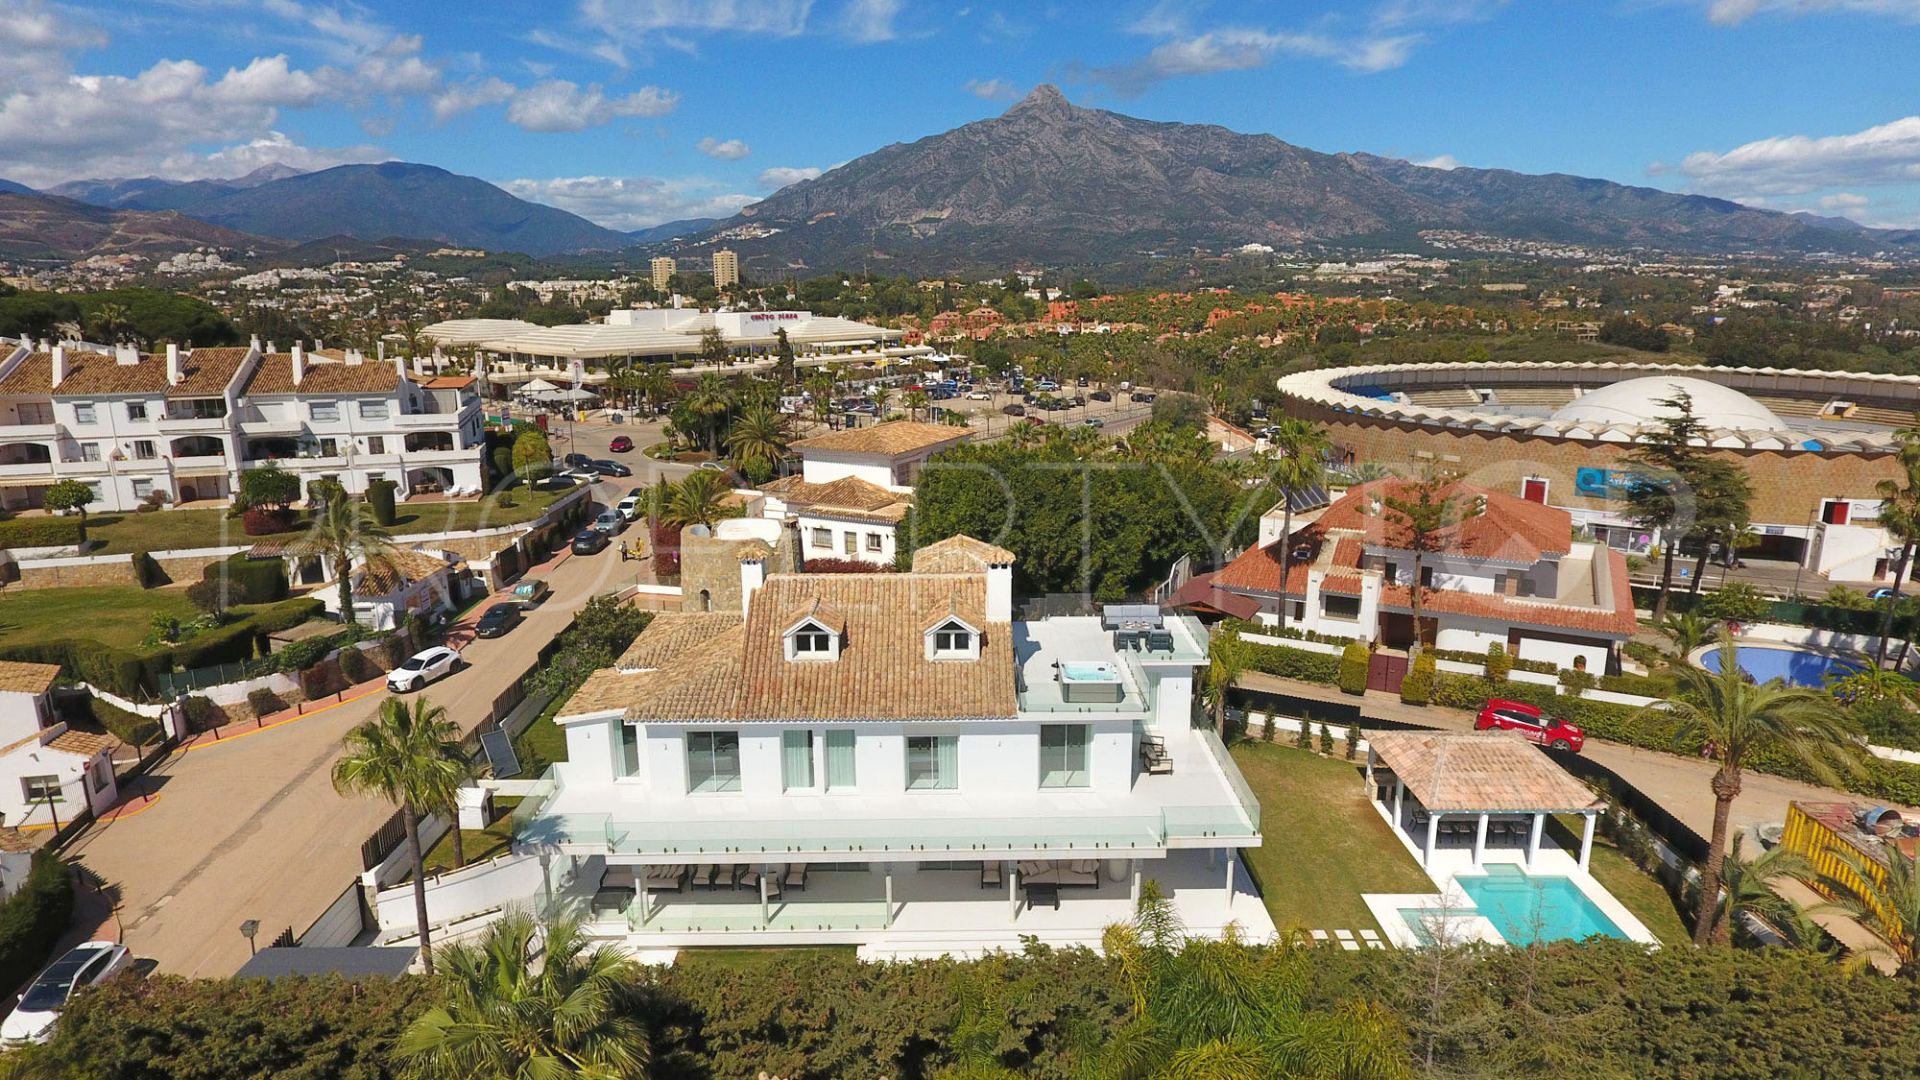 Villa for sale in La Pera with 8 bedrooms